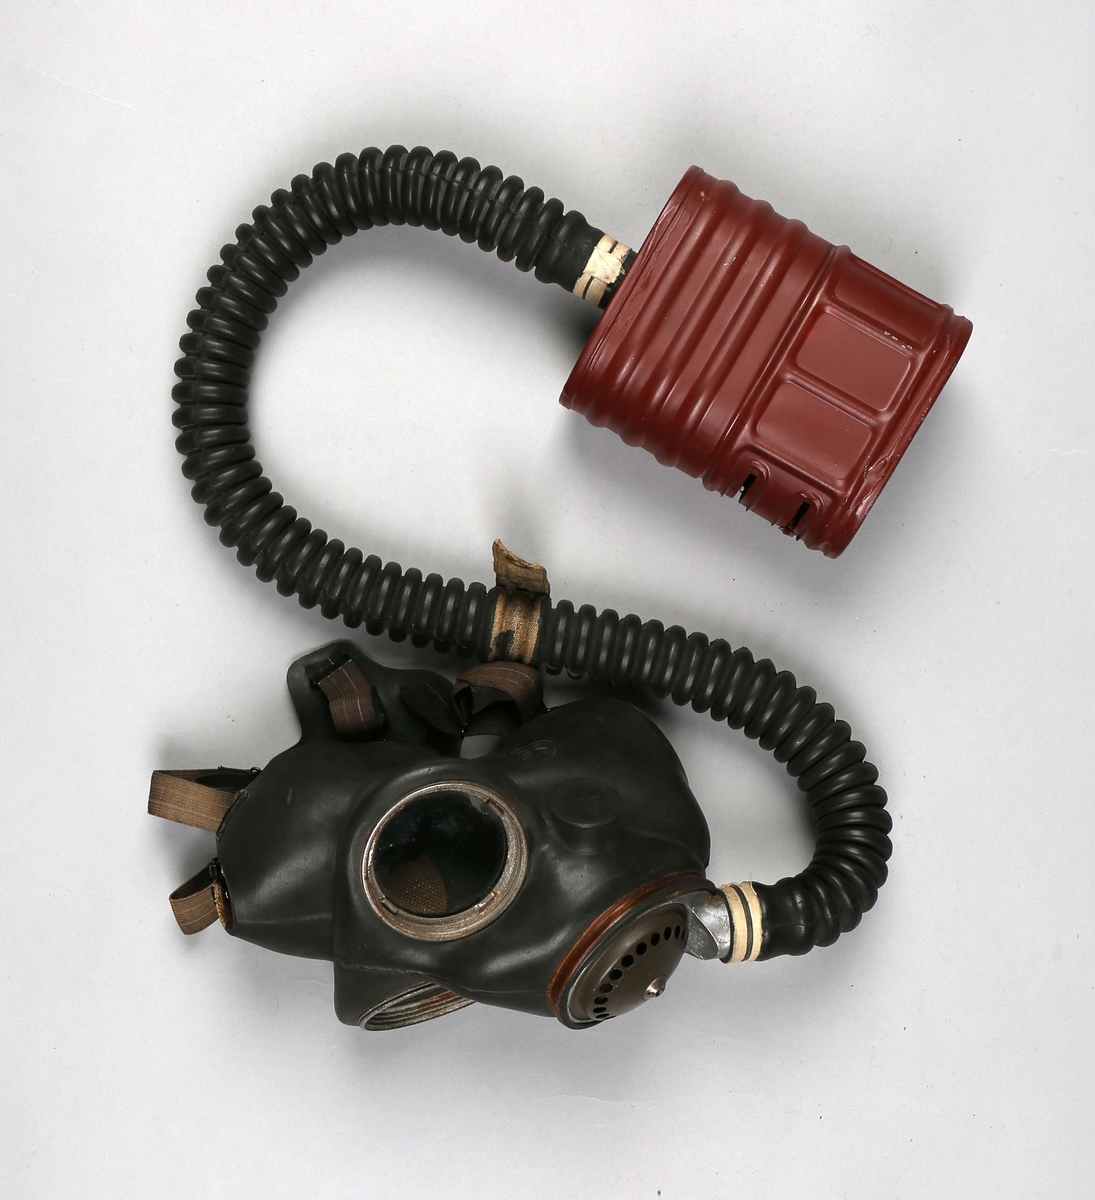 Gassmaske i tøyveske. Gassmaske i gummi med beholder av metall som er koblet sammen med en fleksibel slange. Oppbevares i tøyveske.